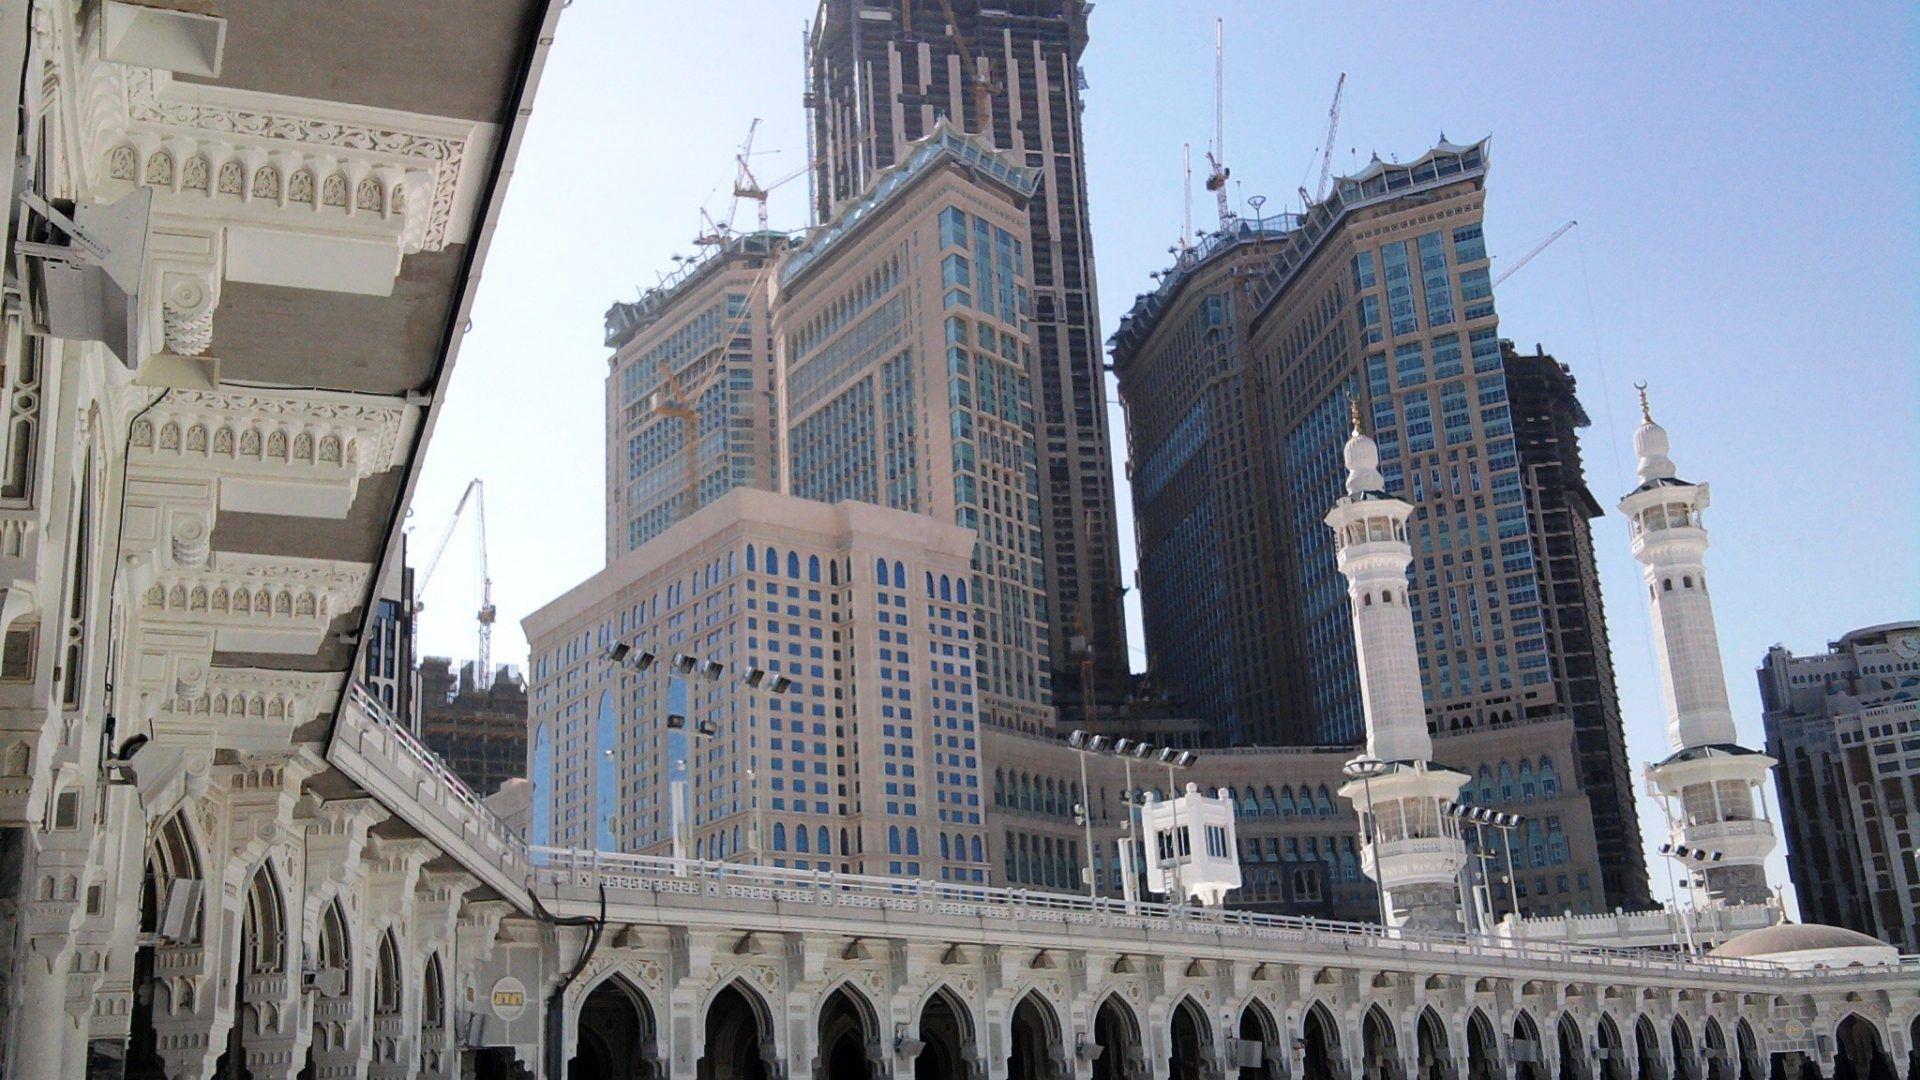 Islam Tag wallpaper: Makkah Islam Clock Mecca Haram Free